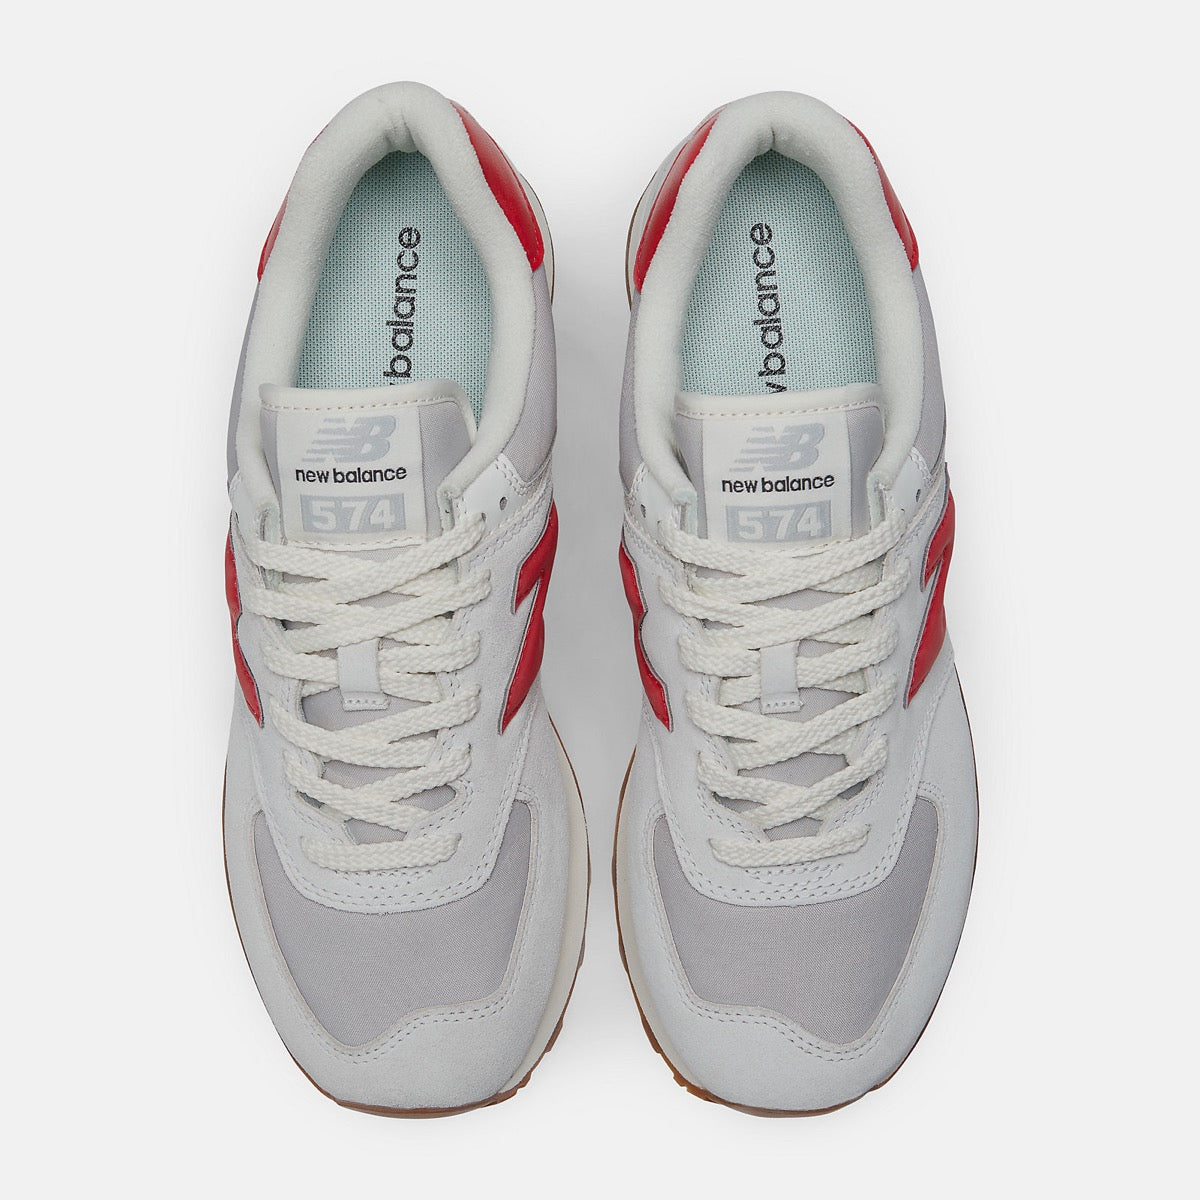 Scarpe Donna NEW BALANCE Sneakers 574 in Pelle colore White e Red